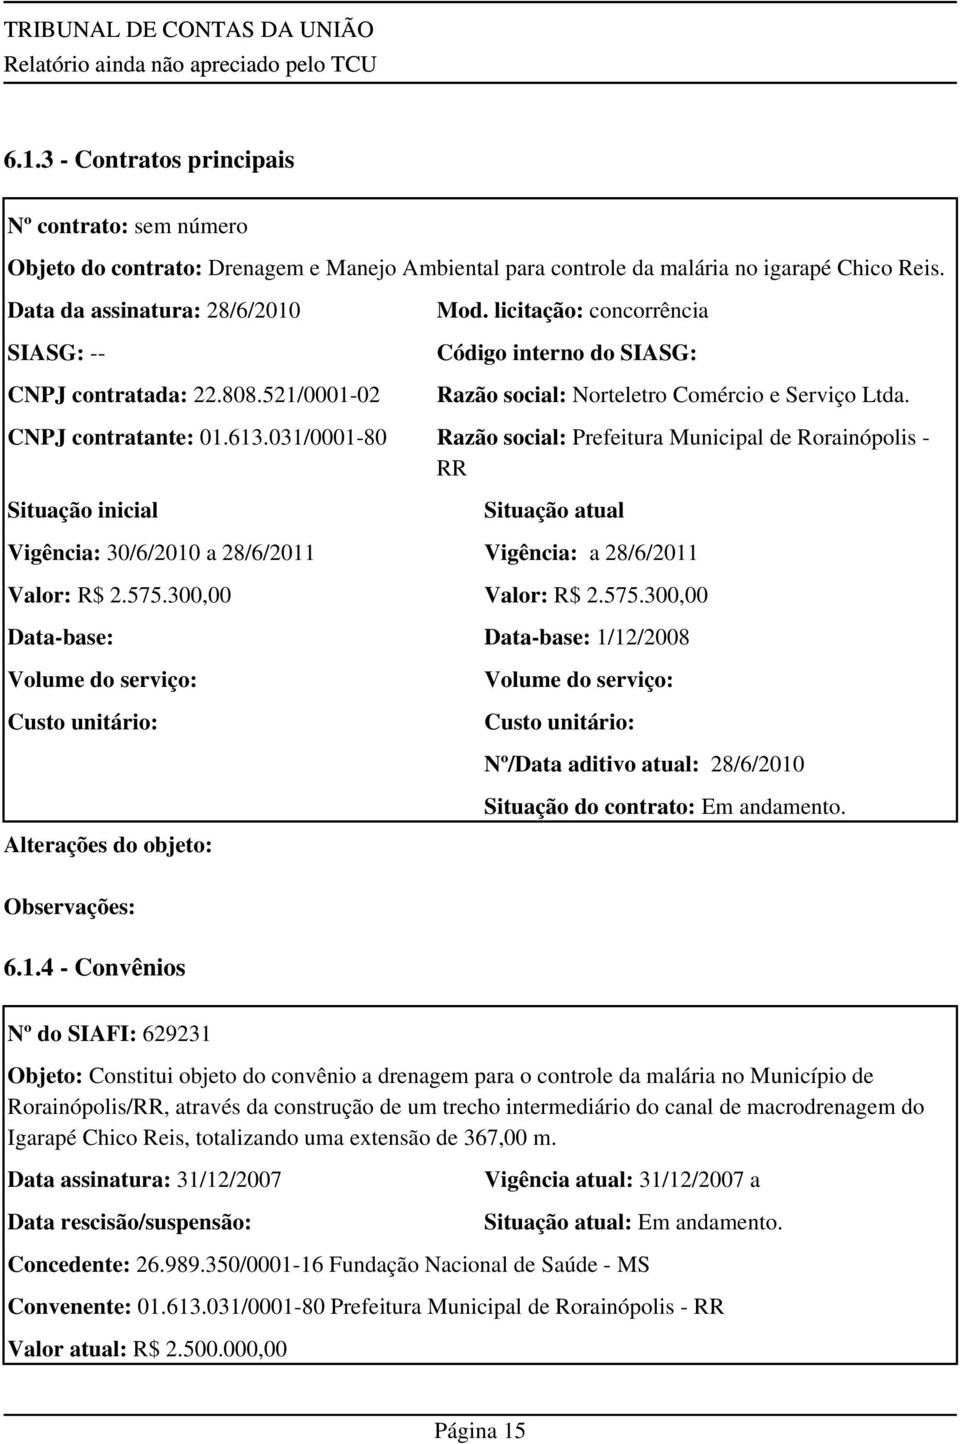 CNPJ contratante: 01.613.031/0001-80 Razão social: Prefeitura Municipal de Rorainópolis - RR Situação inicial Situação atual Vigência: 30/6/2010 a 28/6/2011 Vigência: a 28/6/2011 Valor: R$ 2.575.